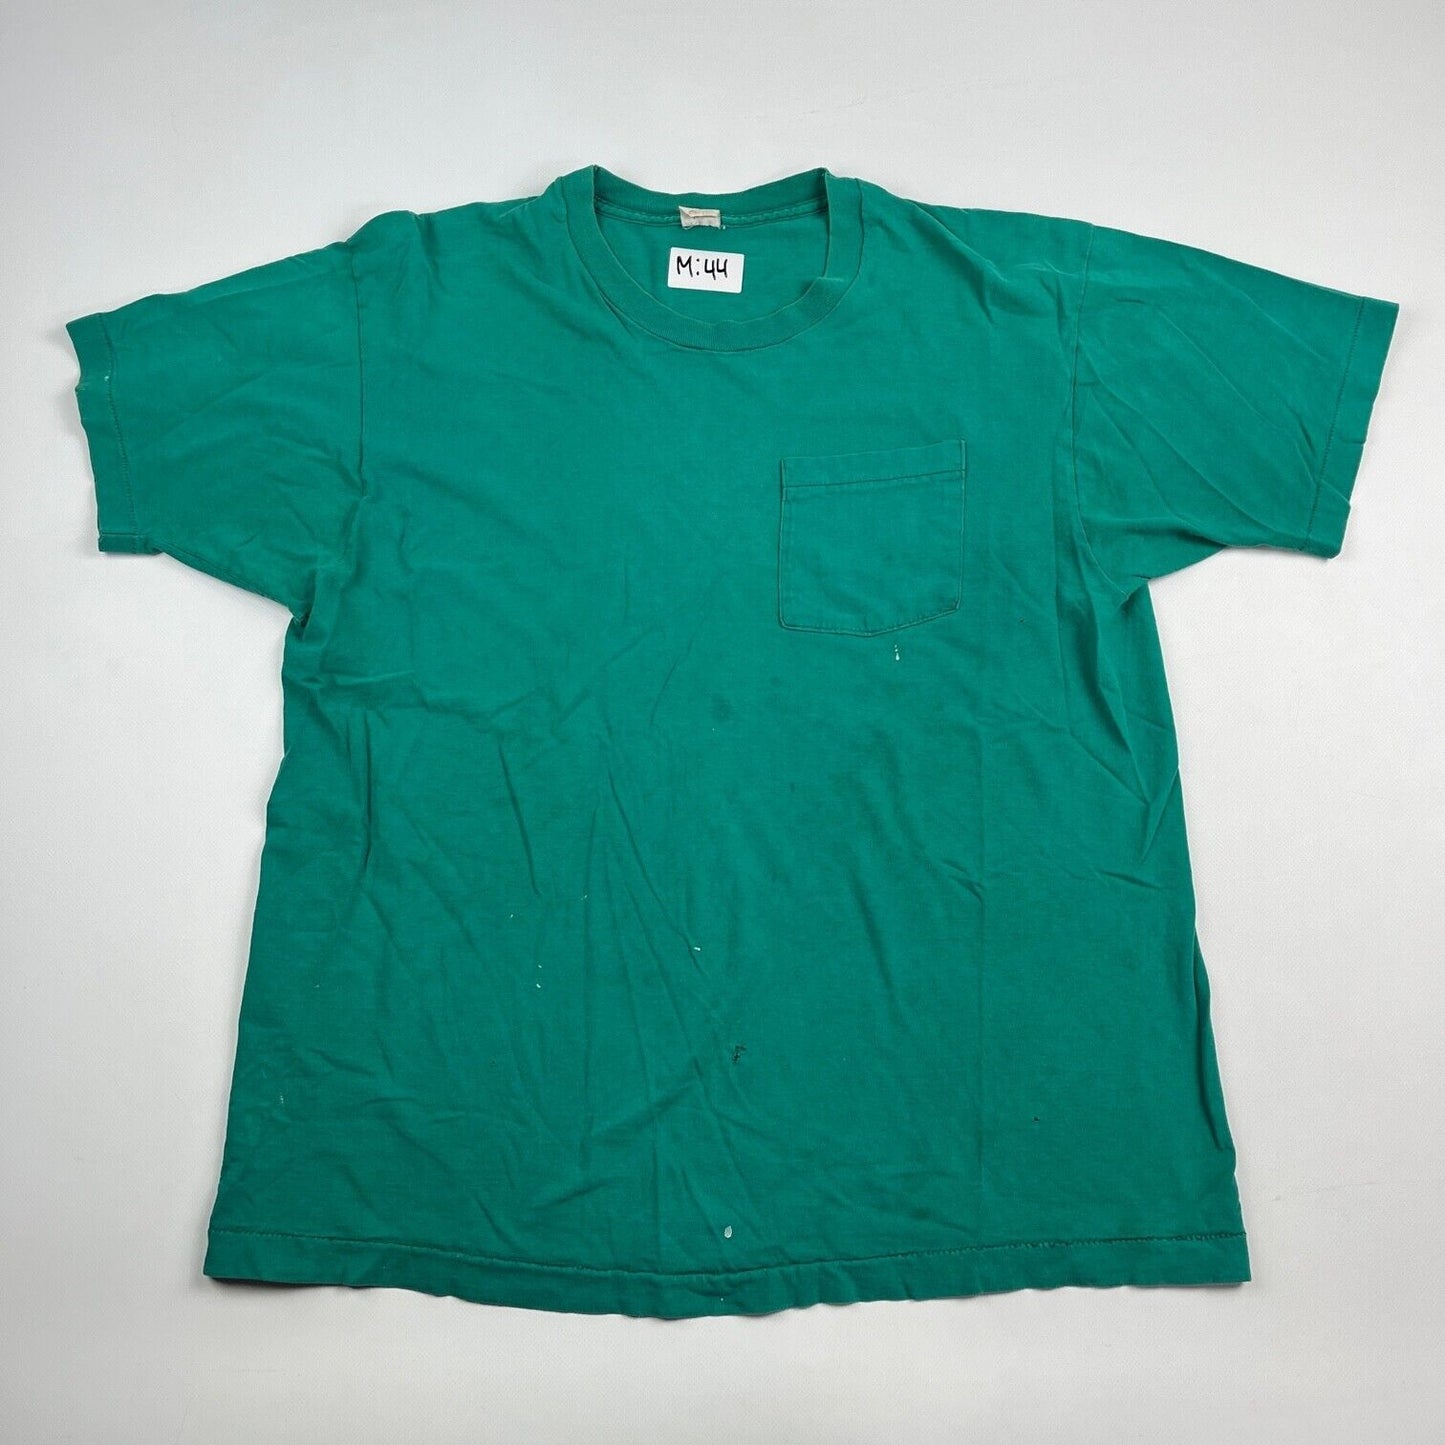 VINTAGE Blank Pocket Shirt Adult Extra Large Teal / Aqua Men 90s